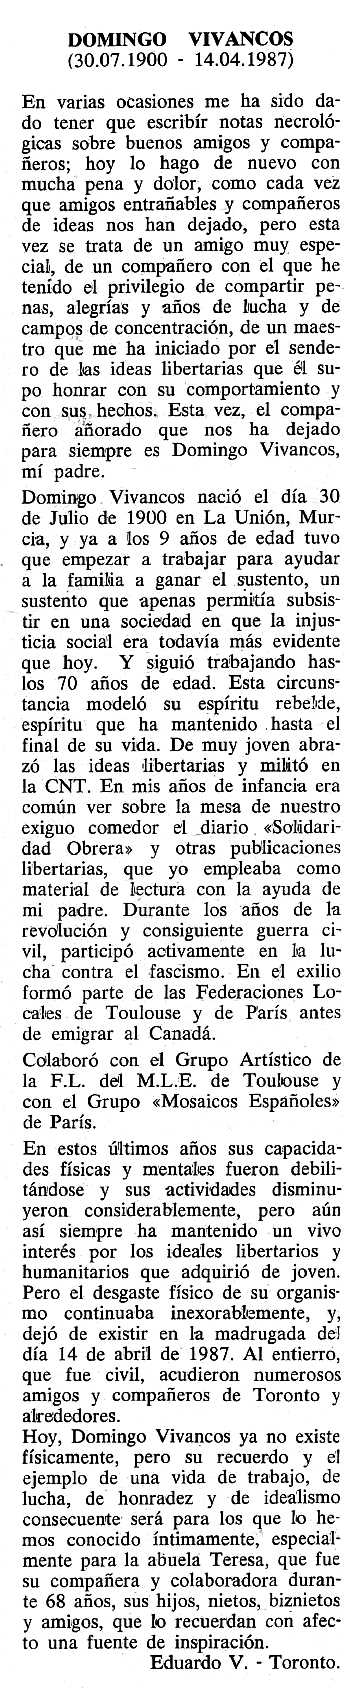 Necrològica de Domingo Vivancos apareguda en el periòdic tolosà "Cenit" del 20 d'octubre de 1987